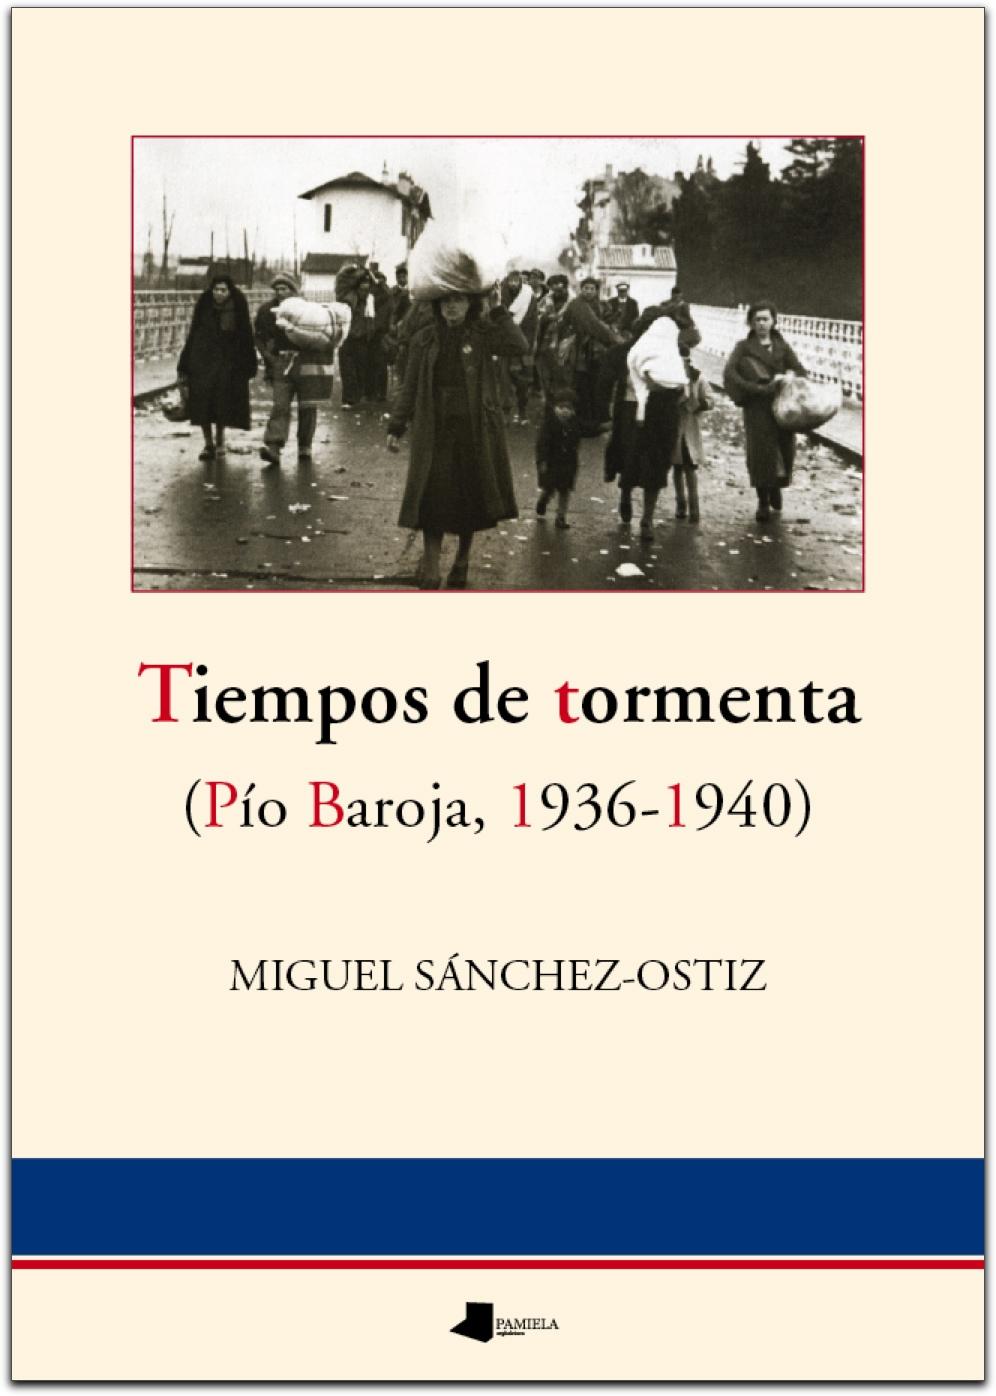 Tiempos de tormenta "(Pío Baroja, 1936-1940)". 